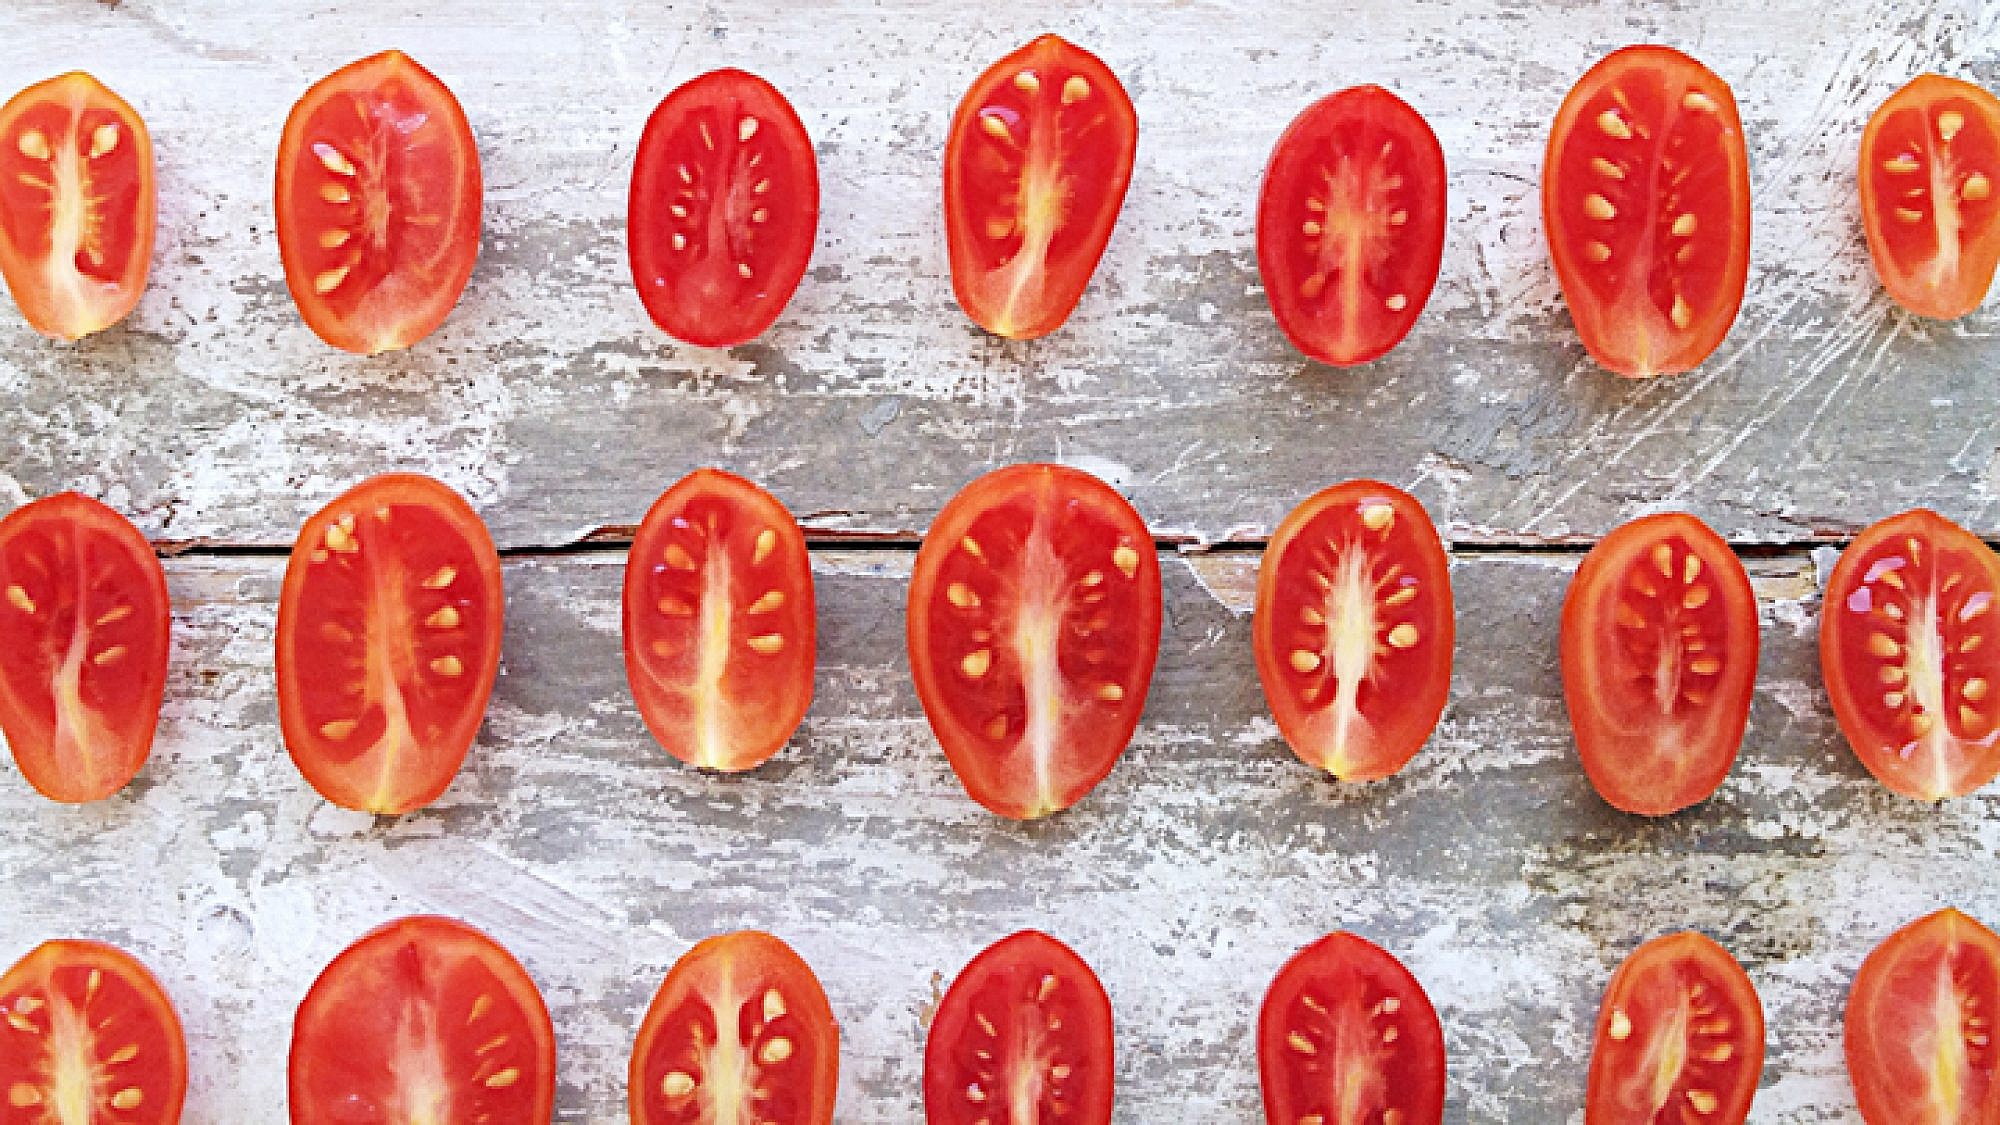 כל בישול מתחיל בעגבניות שרי צלויות | צילום מתוך האינסטגרם של רותי רוסו @ruthlessrousso